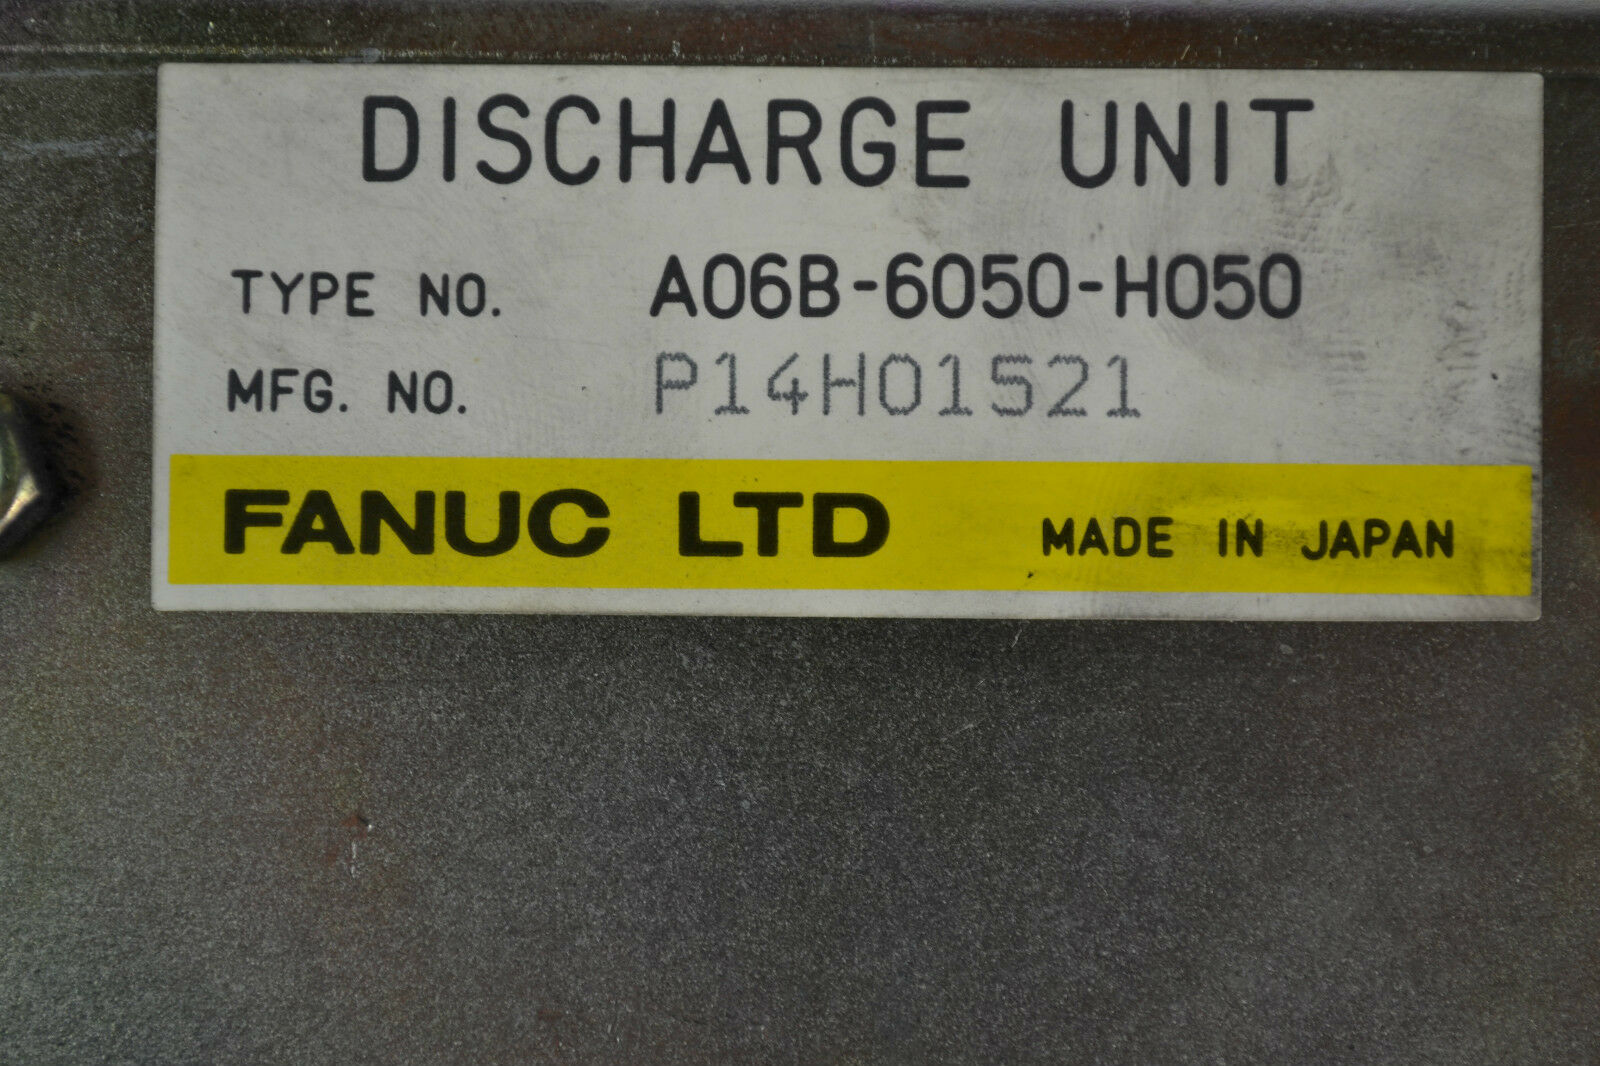 Fanuc LTD Discharge Unit  A06B-6050-H050 